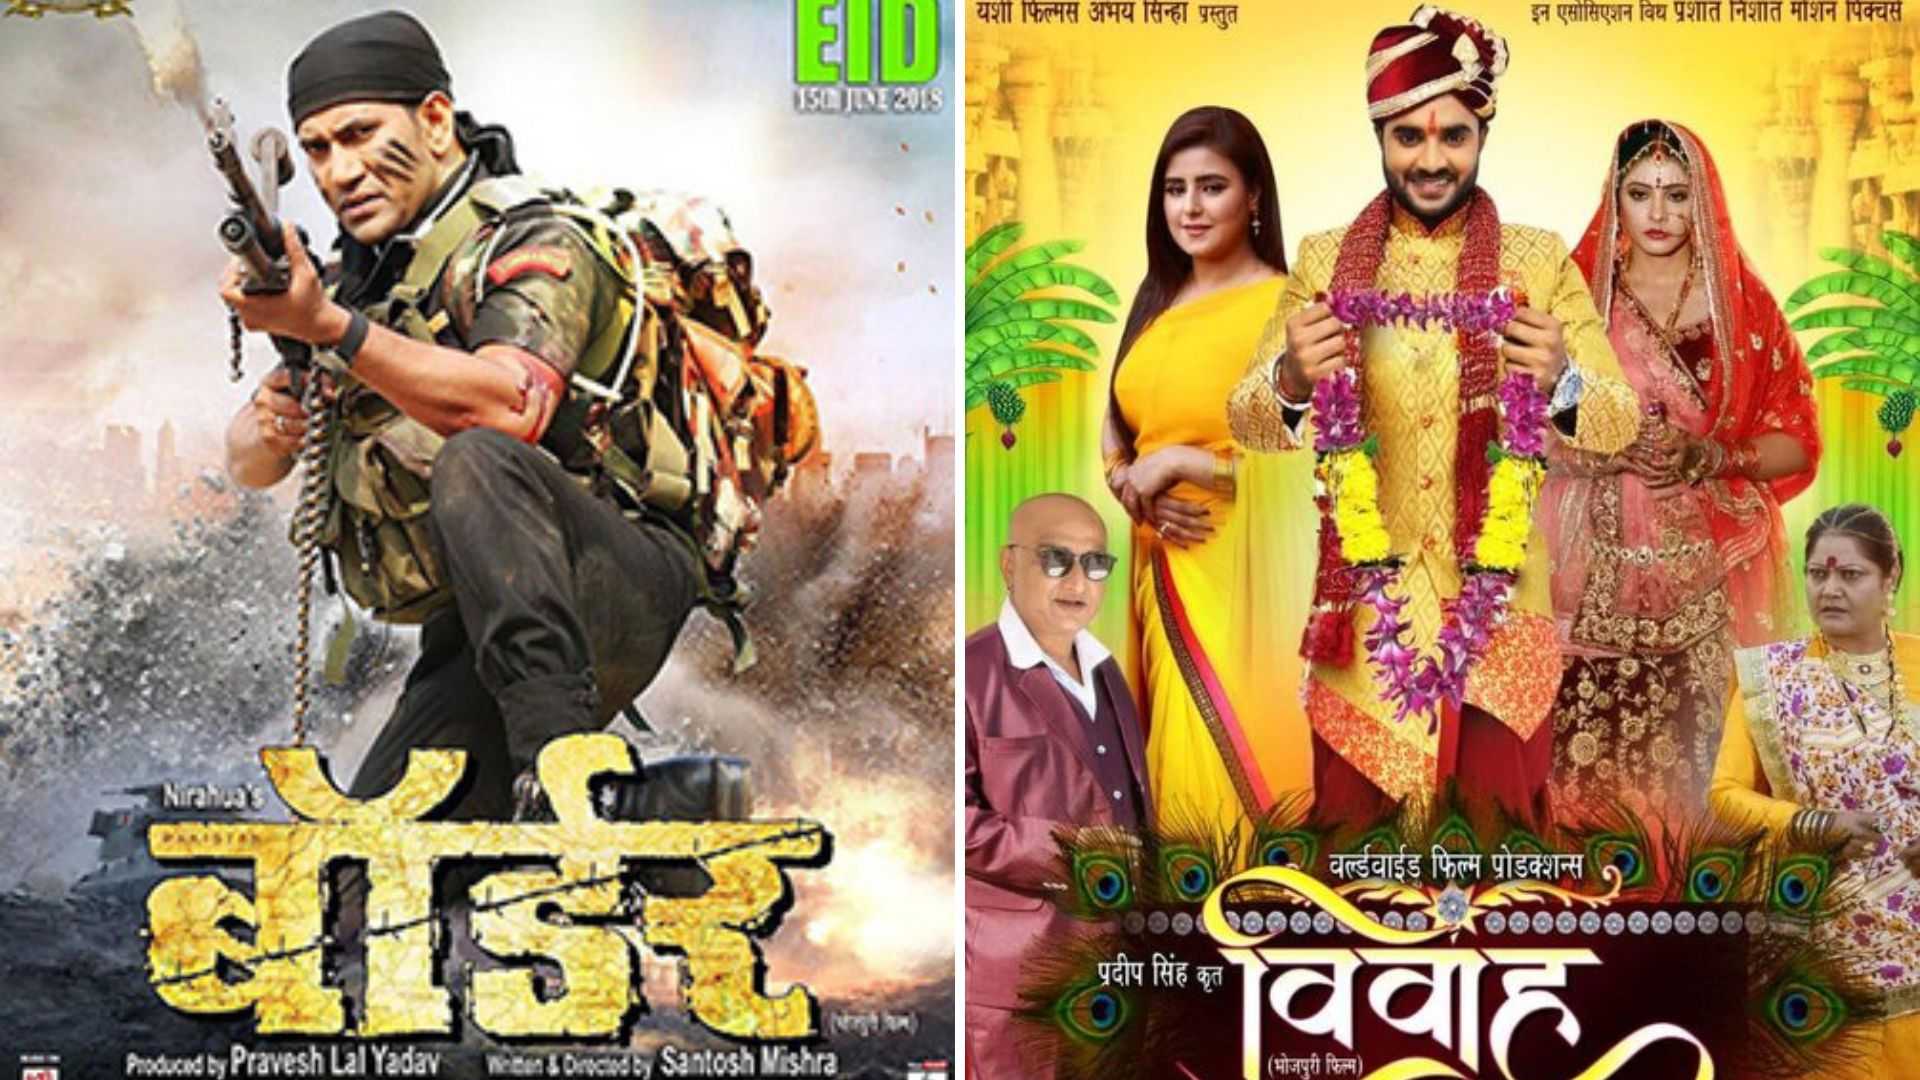 बॉलीवुड से कॉपी की गई हैं ये 5 भोजपुरी फिल्में, टाइटल भी हैं सेम